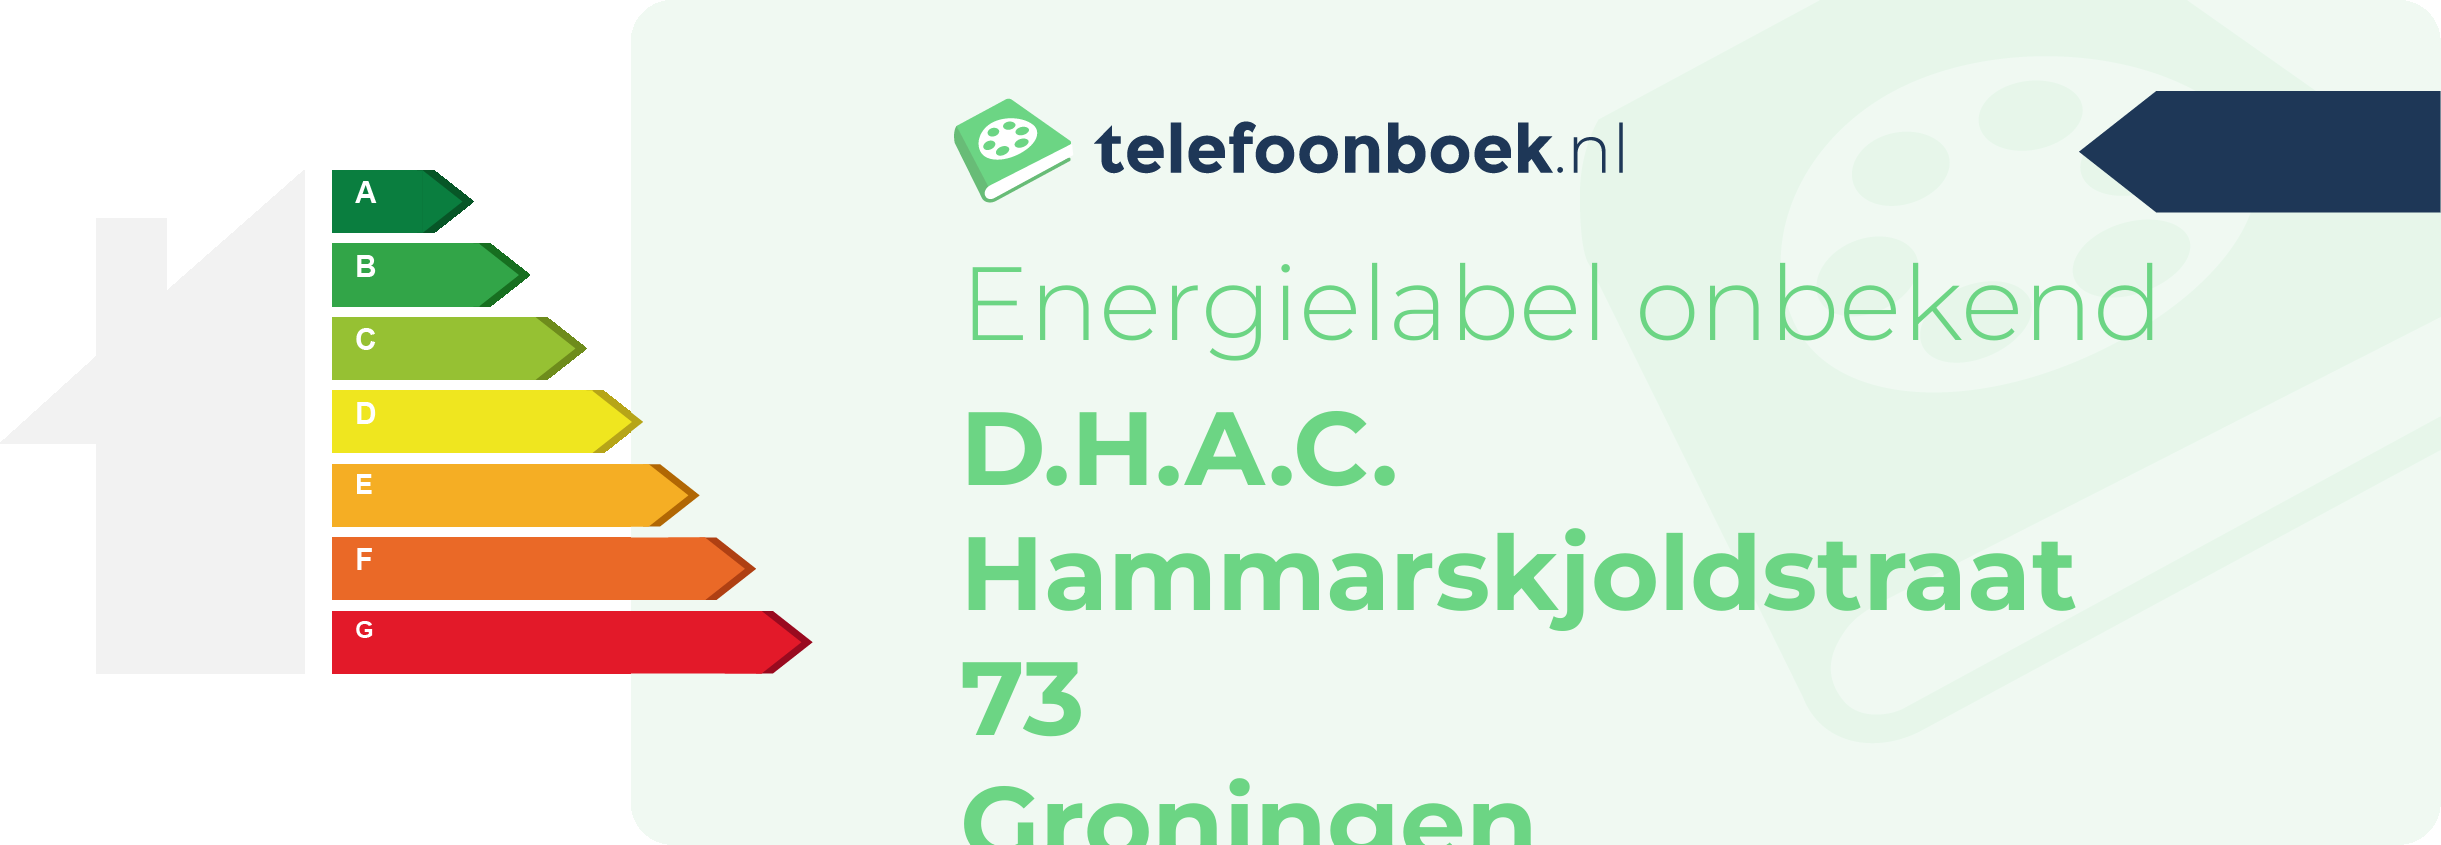 Energielabel D.H.A.C. Hammarskjoldstraat 73 Groningen